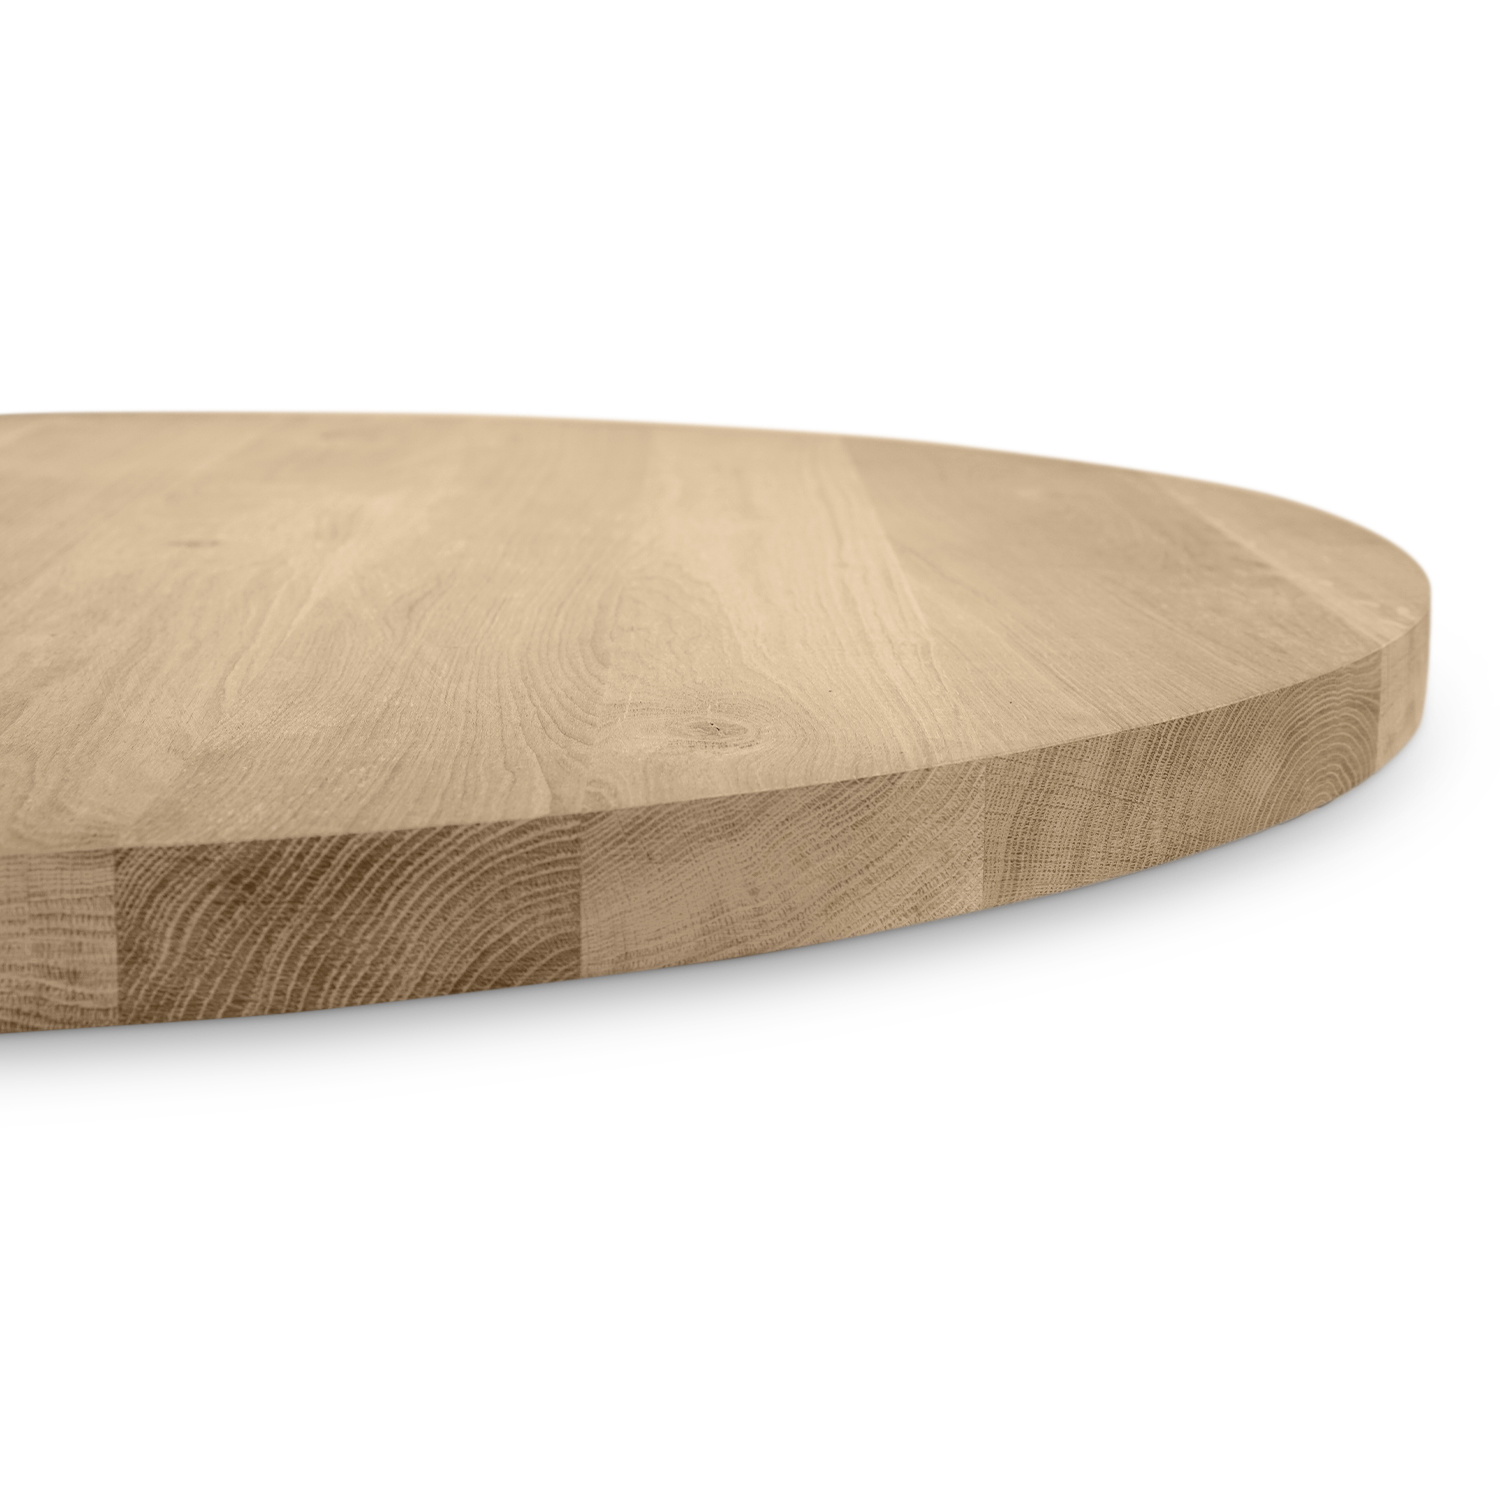  Eiken tafelblad rond - 3 cm dik (1-laag) - Diverse afmetingen - optioneel geborsteld - Rustiek Europees eikenhout - verlijmd kd 10-12%